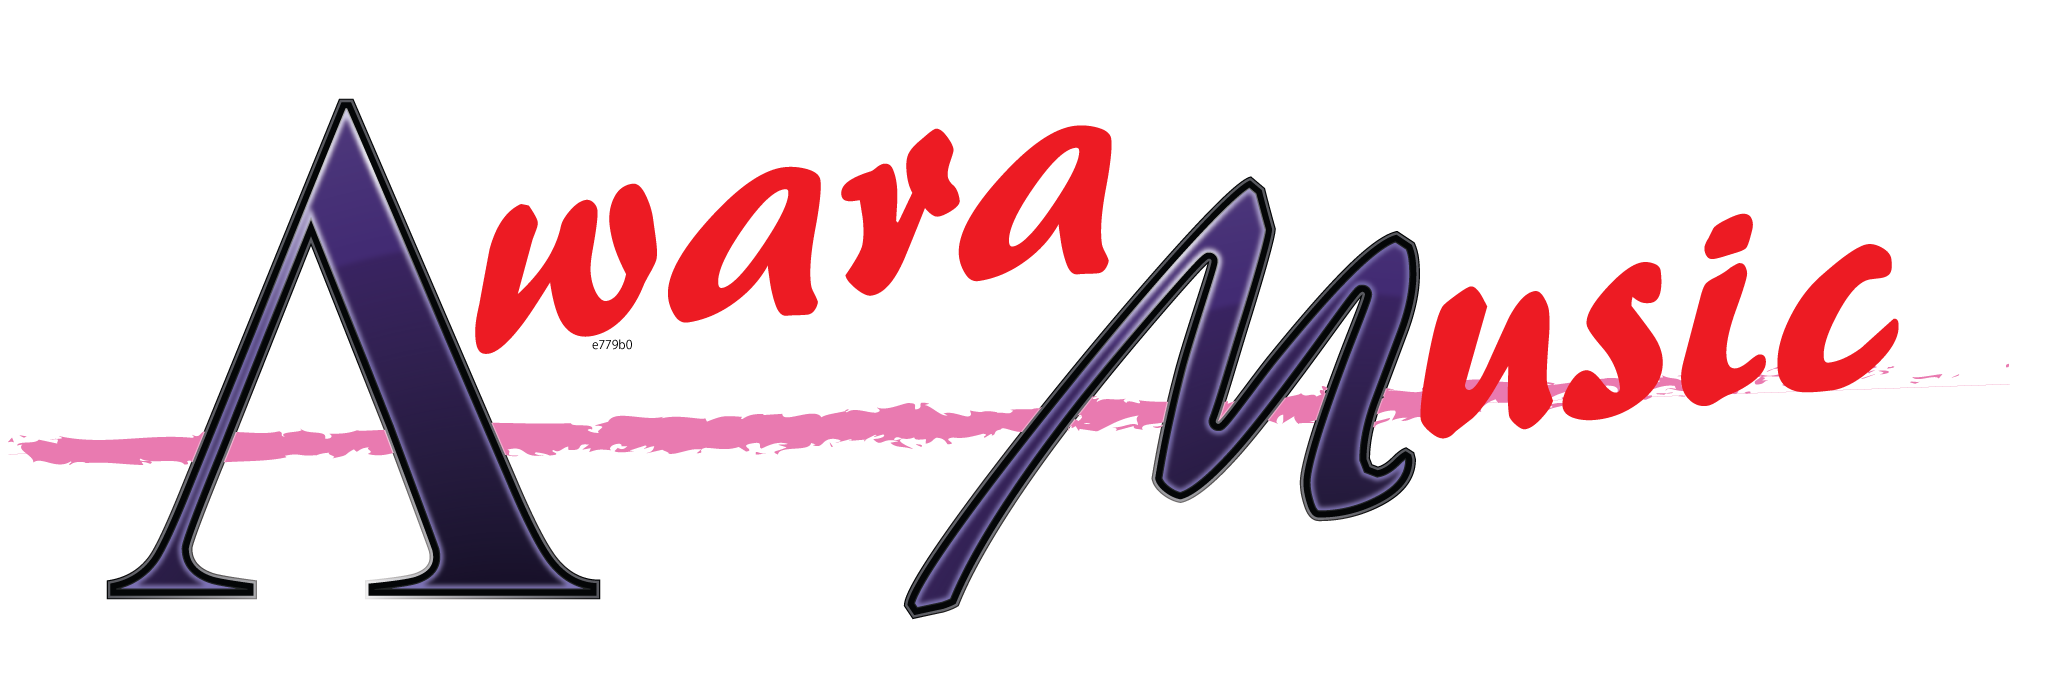 awara-music